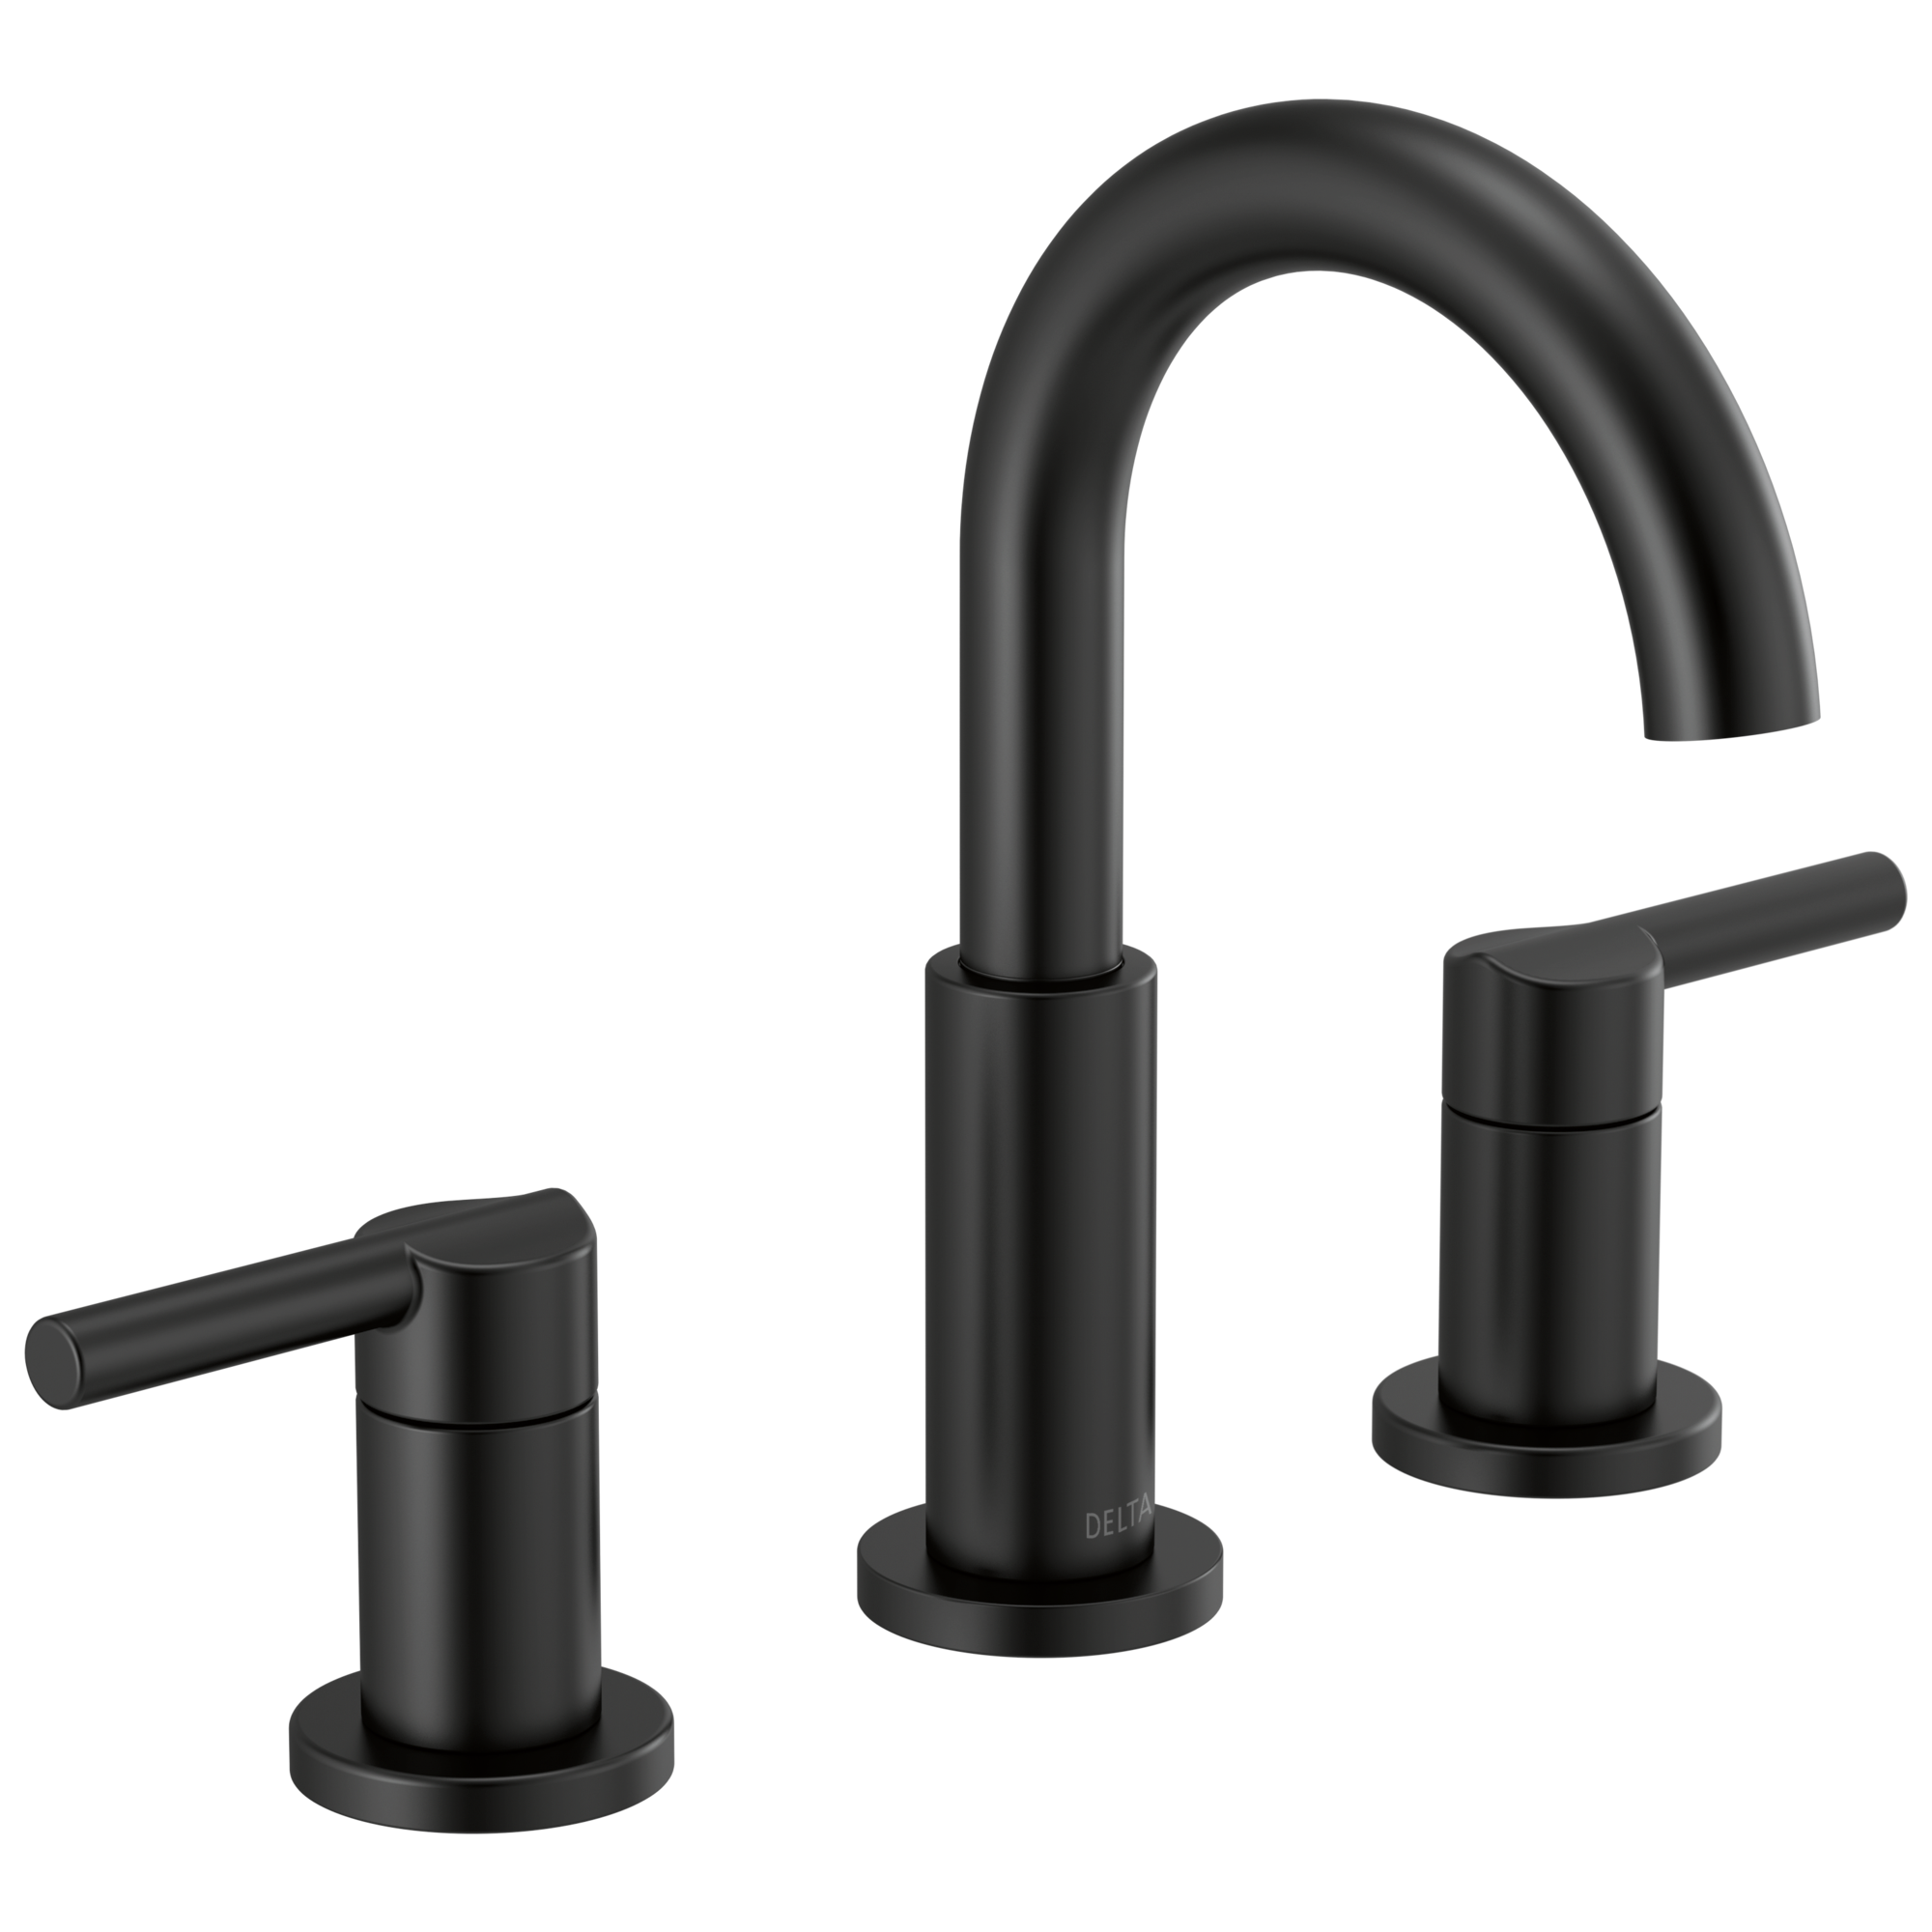 Delta Nicoli Matte Black 2-handle Widespread WaterSense High-arc Bathroom Sink Faucet with Drain